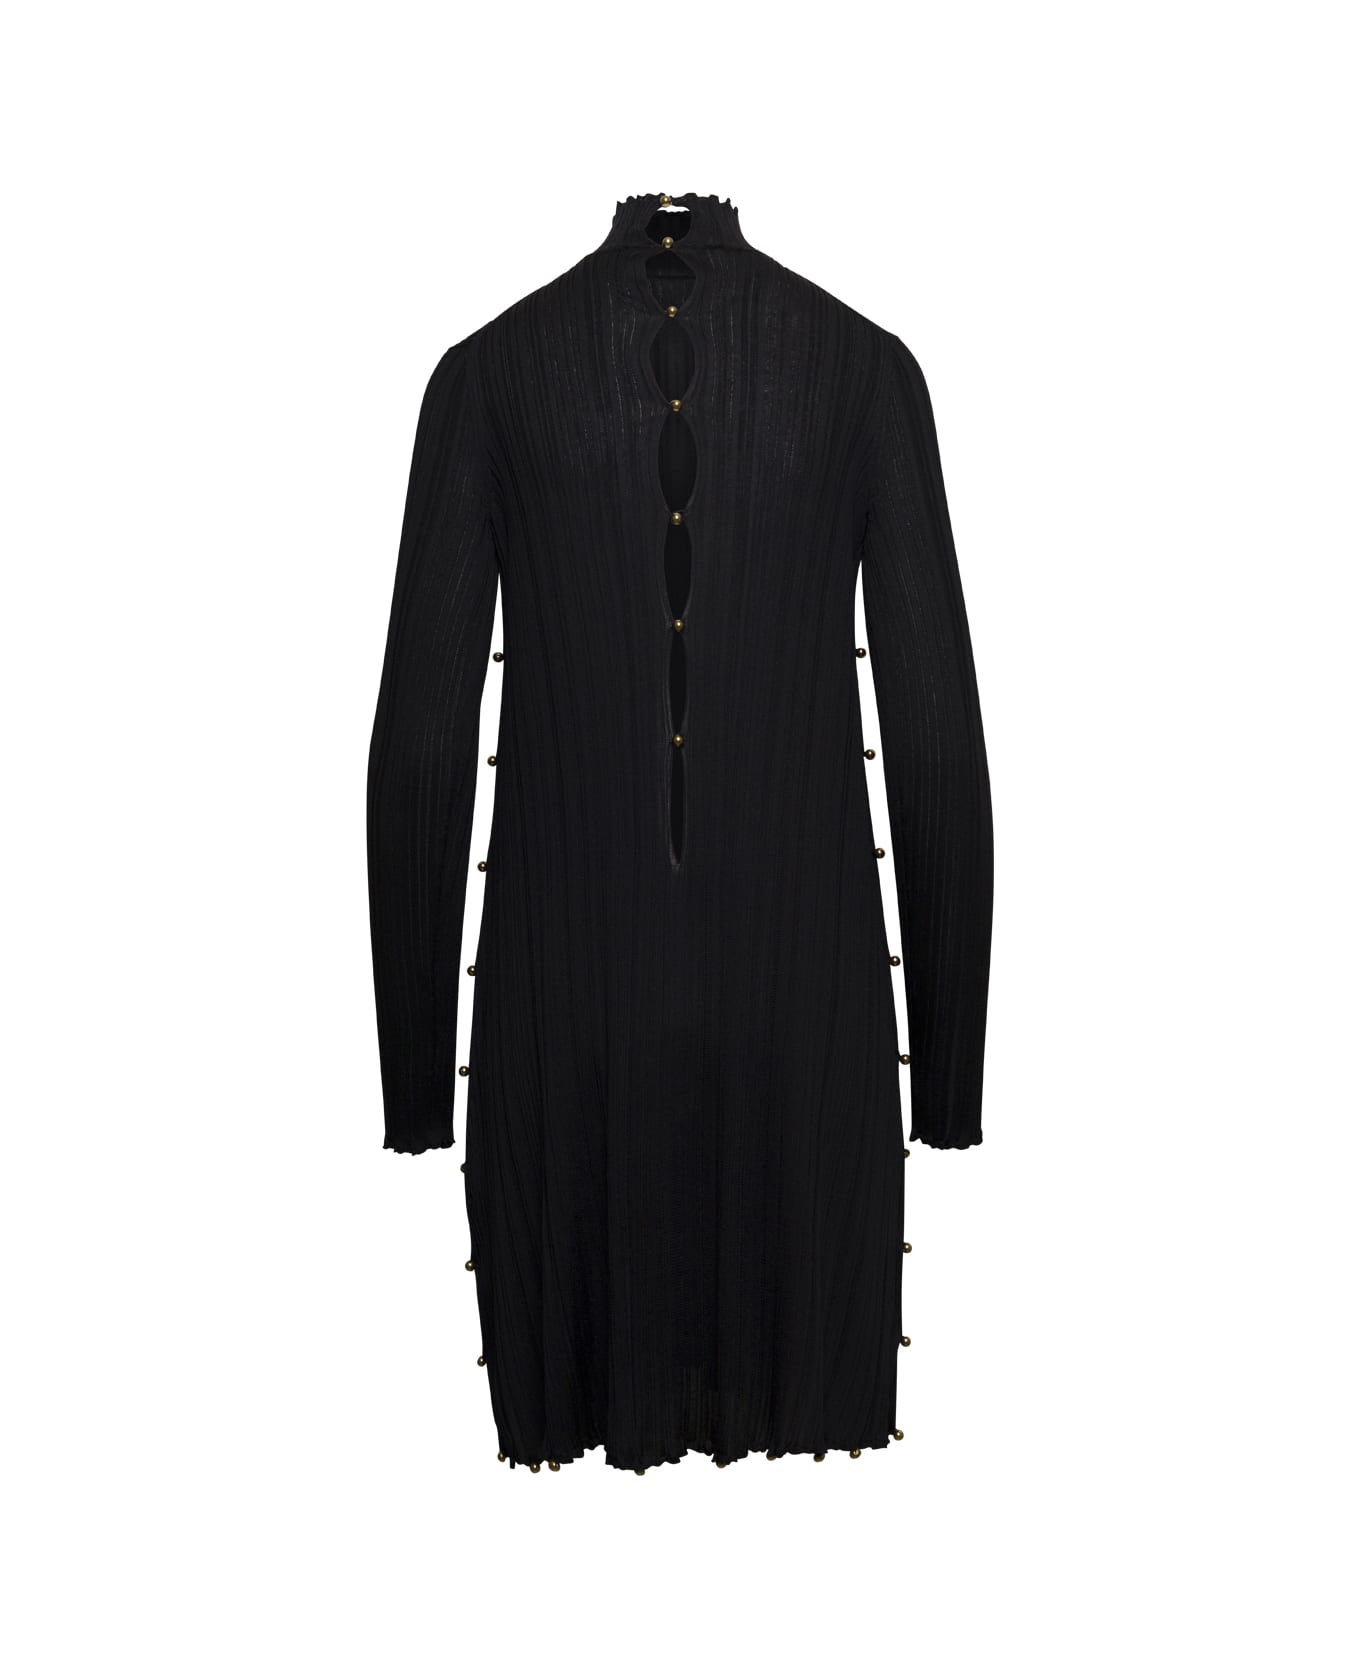 Bottega Veneta Knit Mini Dress Long Sleeves - Black